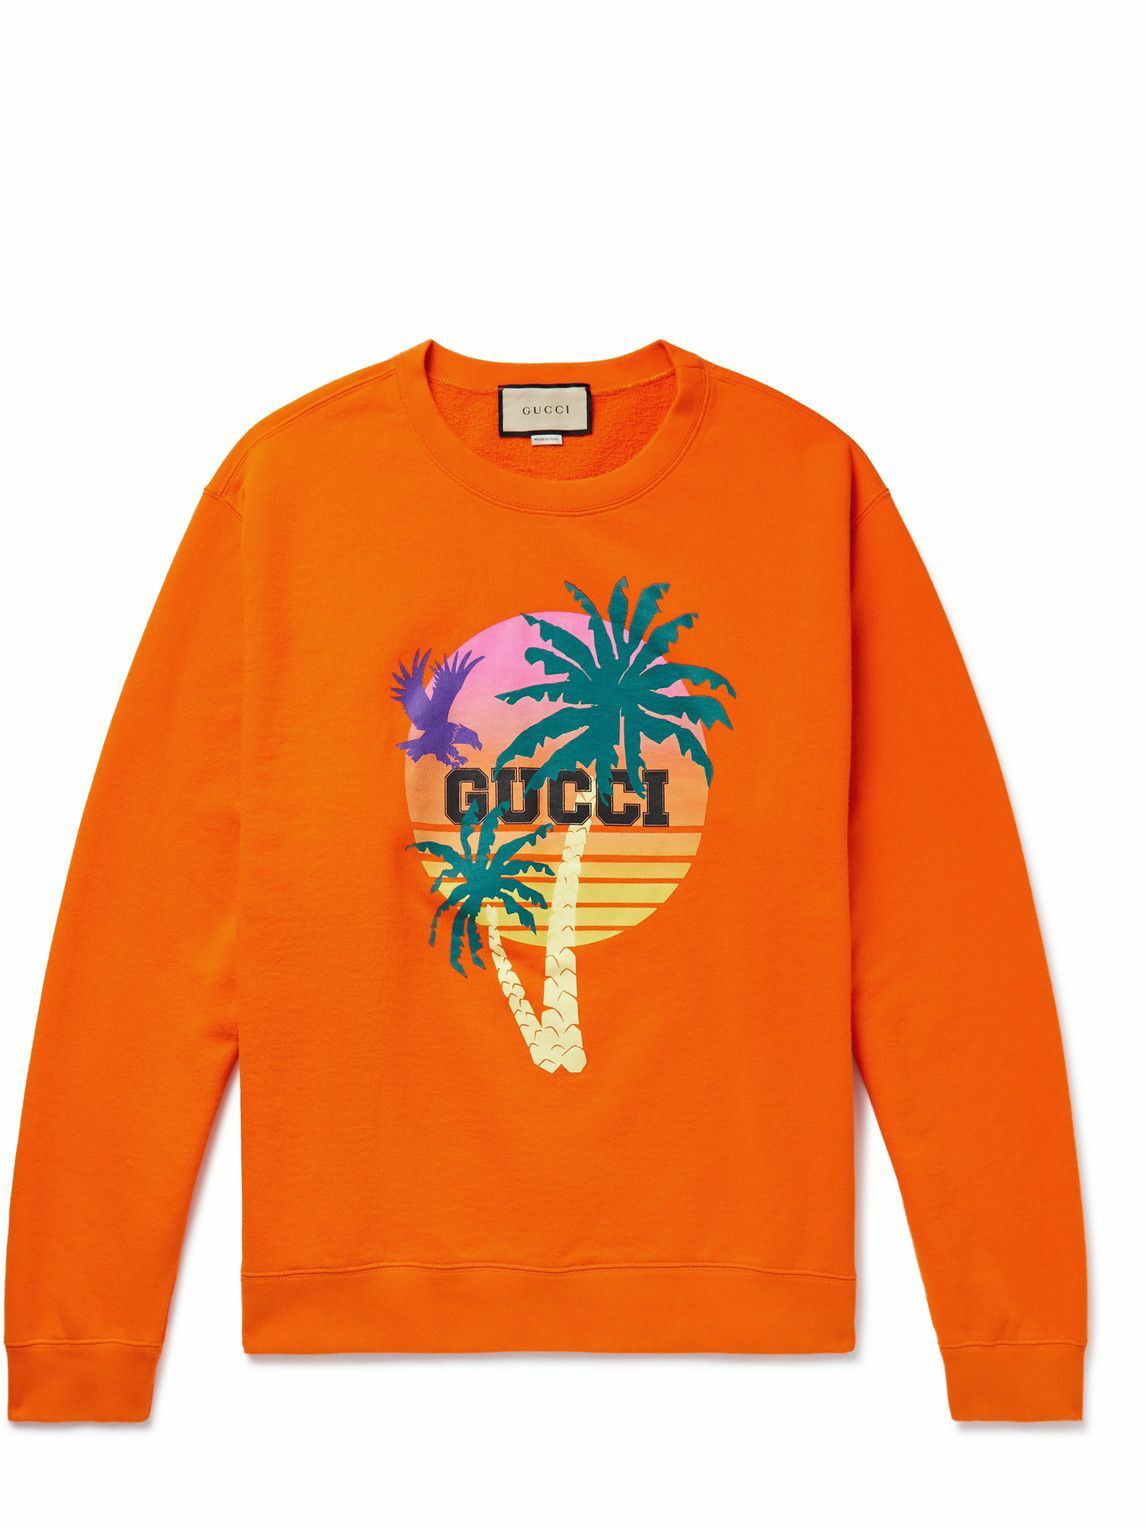 GUCCI - Love Parade Printed Cotton-Jersey - Orange Gucci